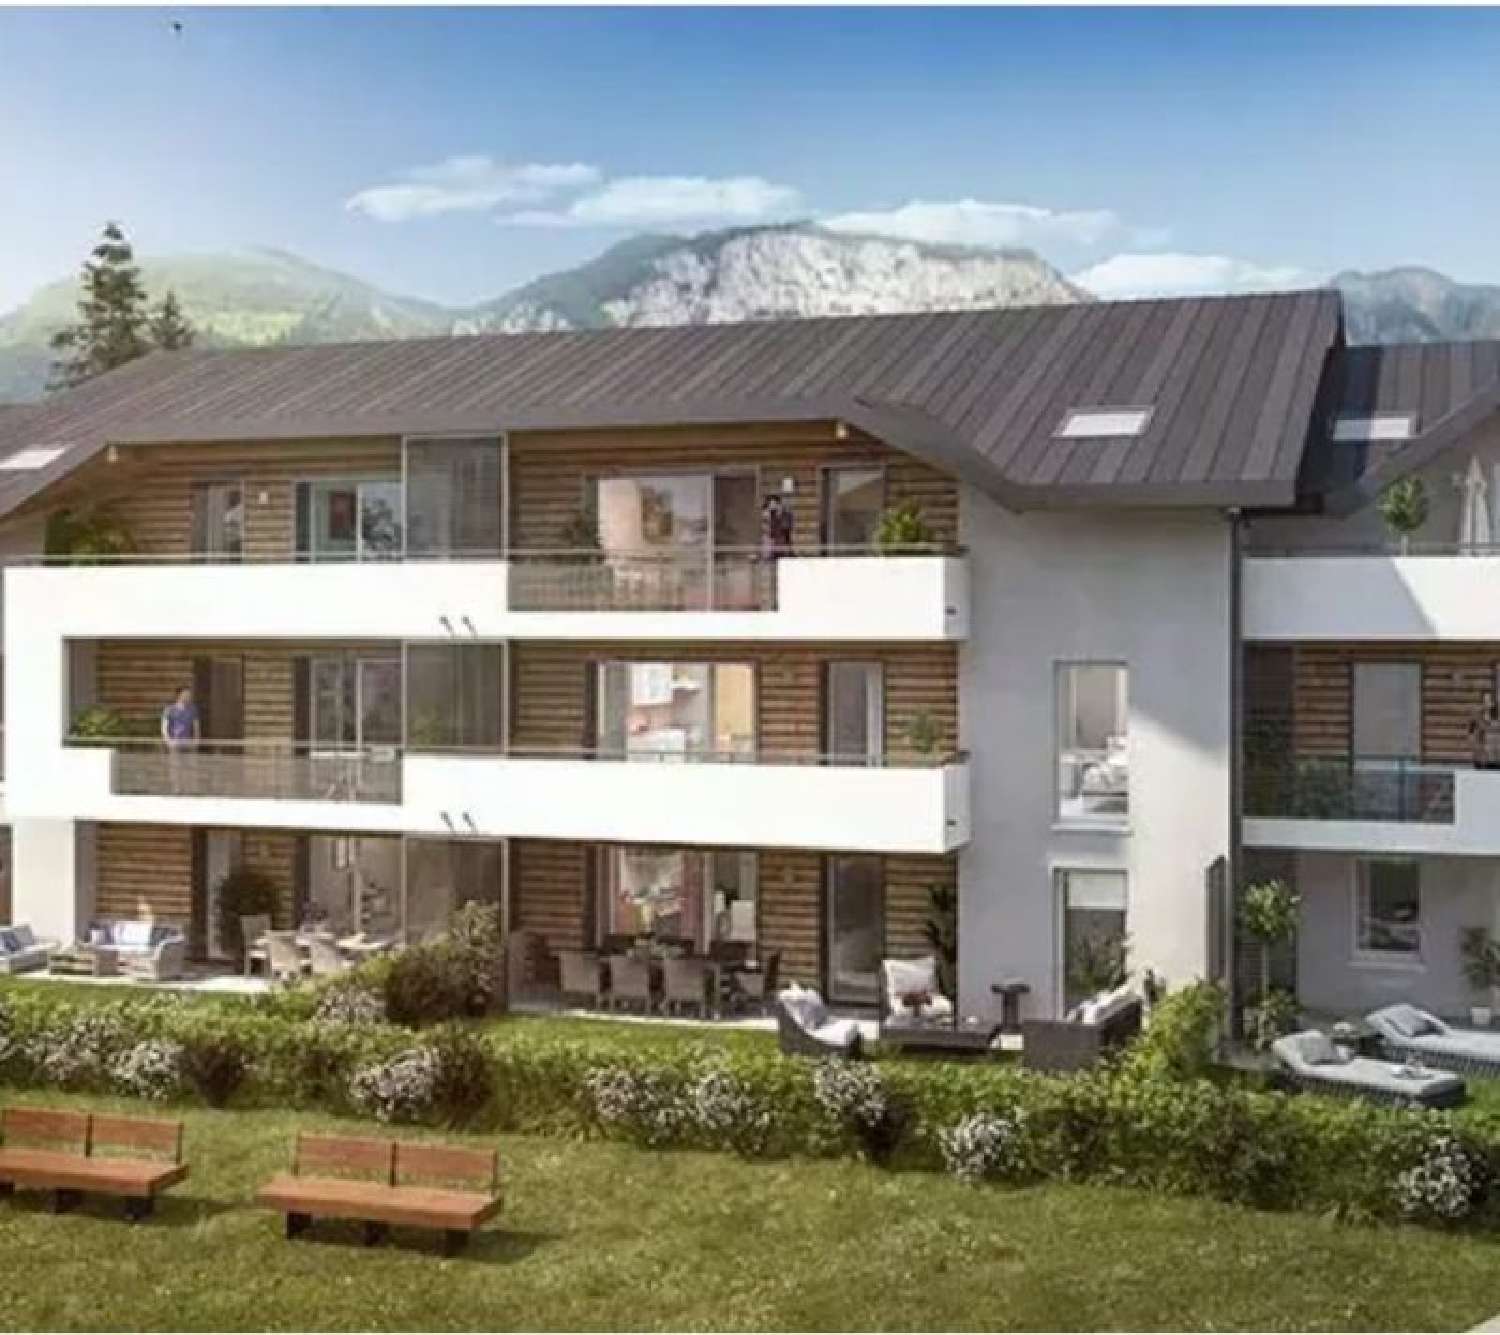 Saint-Sixt Haute-Savoie Wohnung/ Apartment Bild 6814447